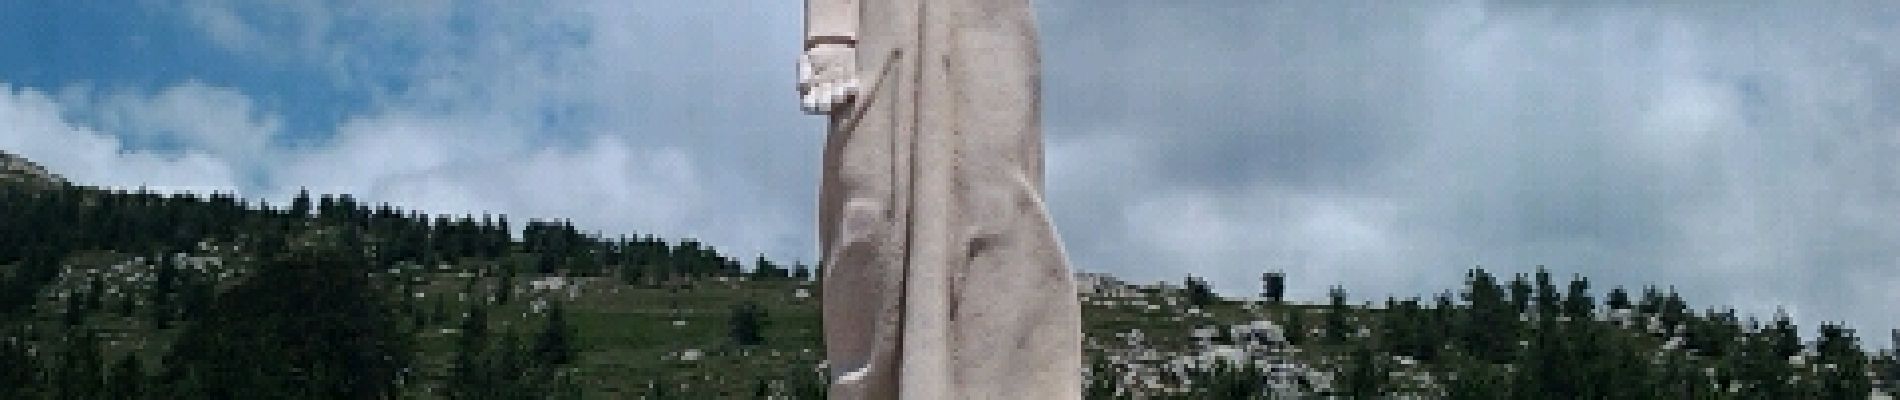 POI Albertacce - Statue - Photo